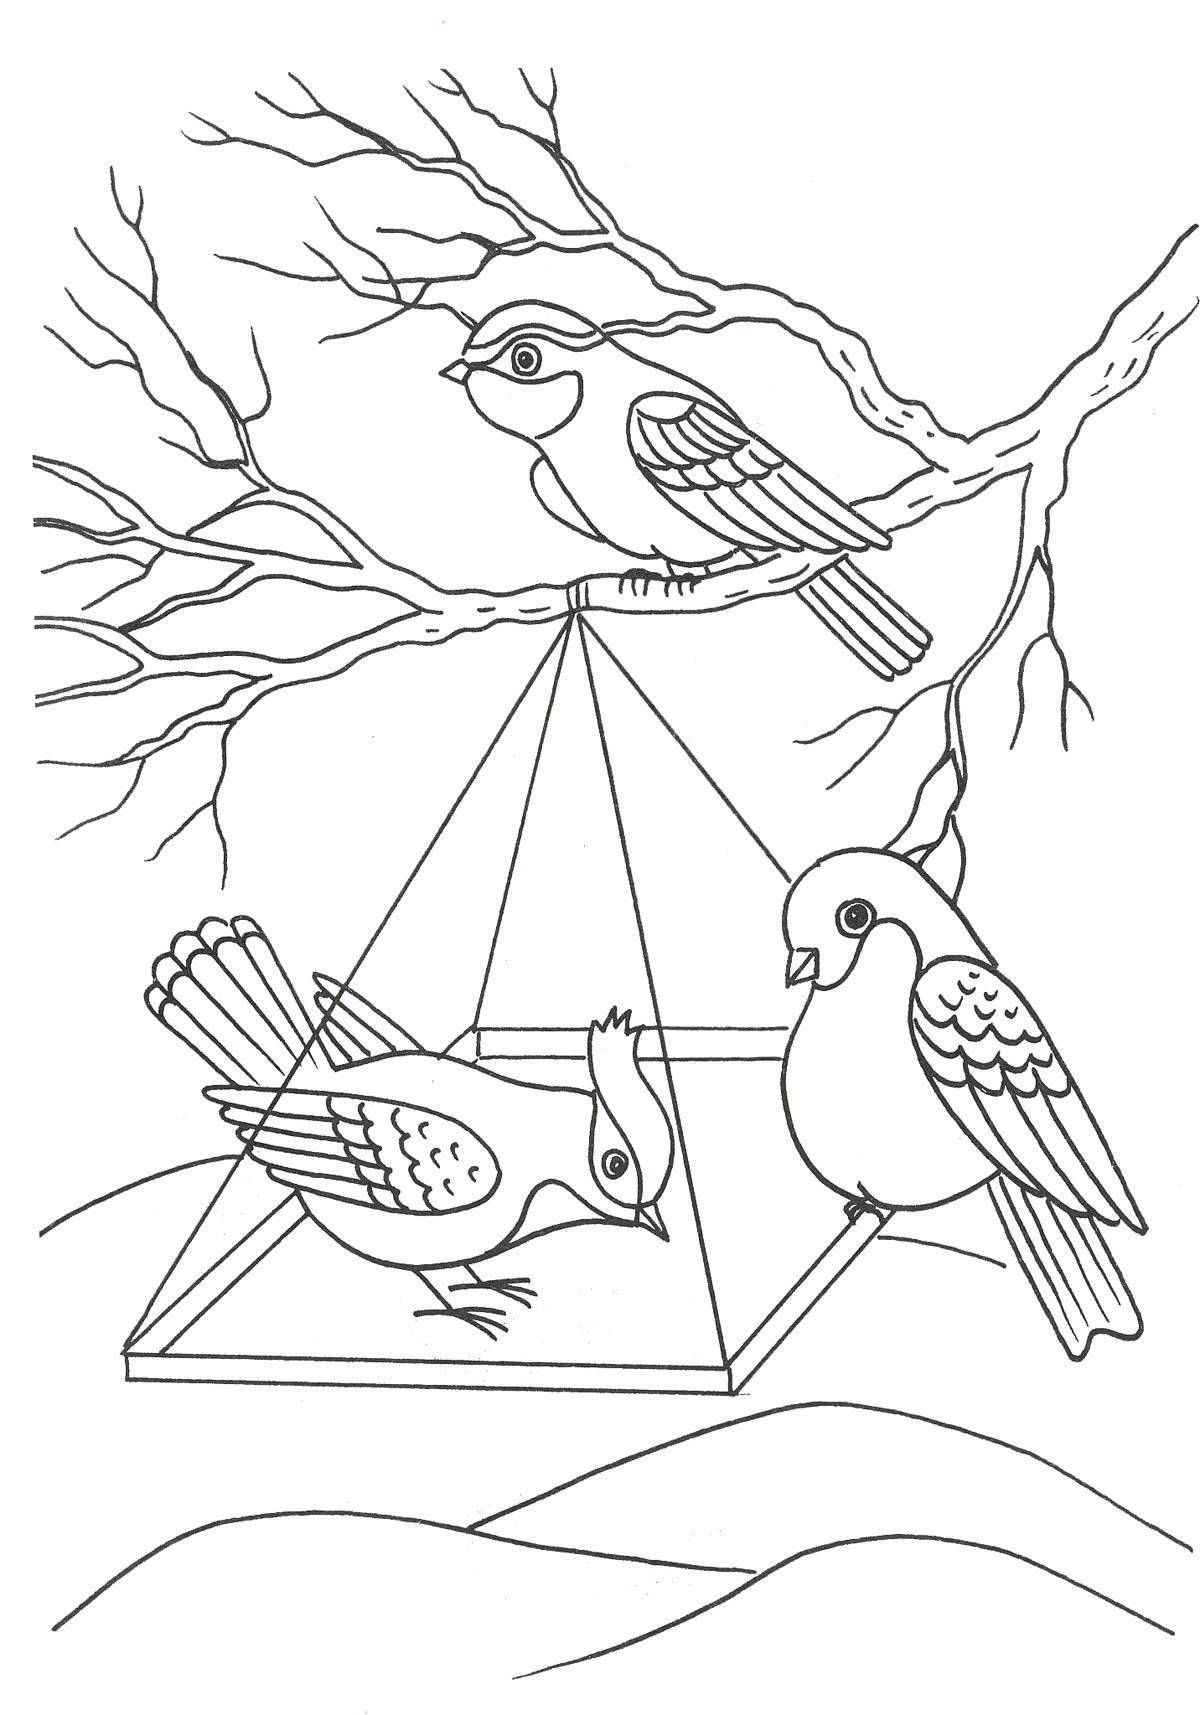 Perfect bird feeder coloring book